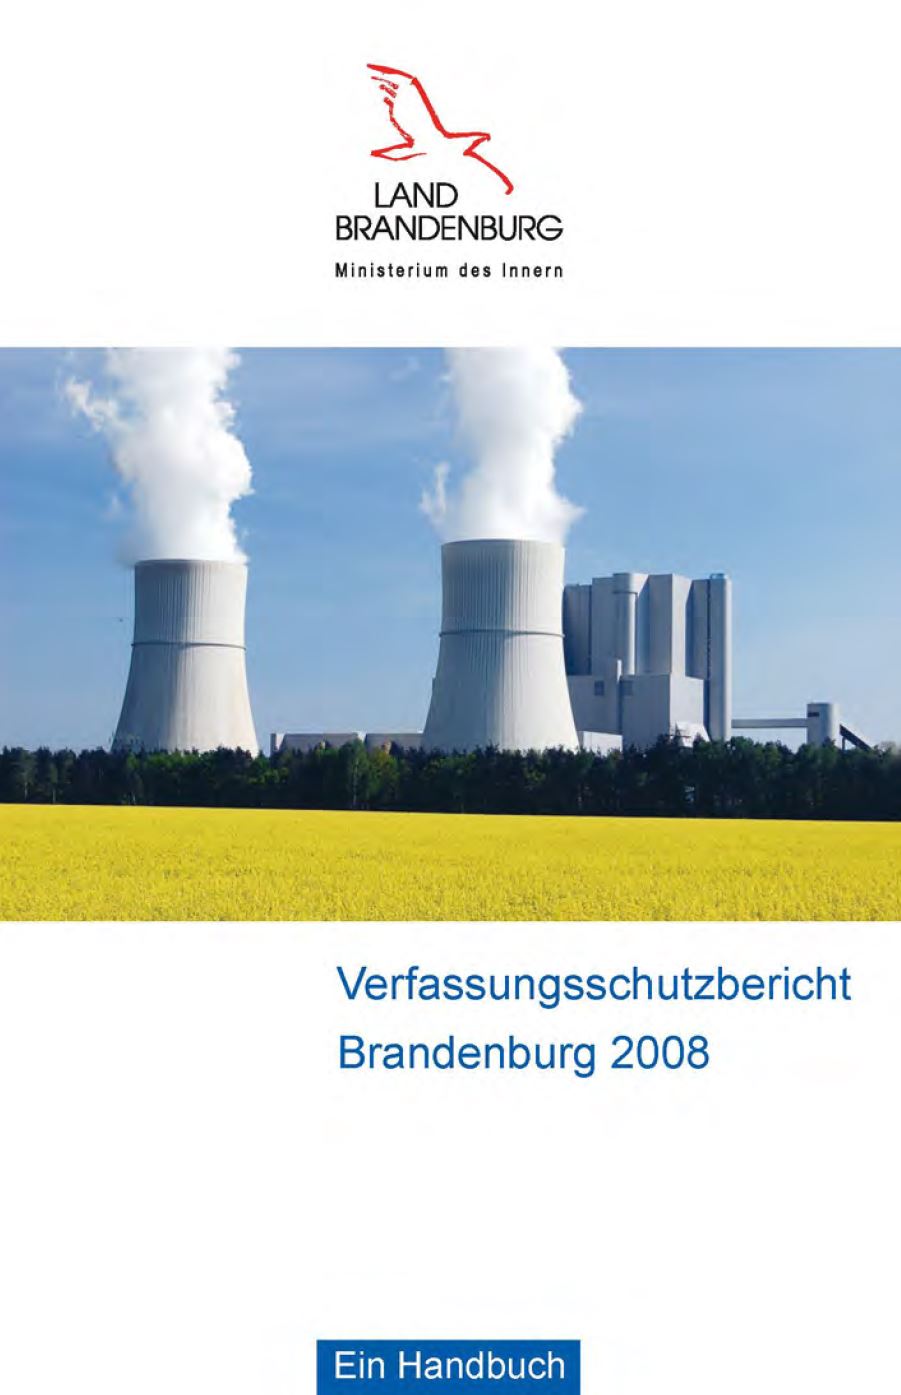 Bild vergrößern (Bild: Titelseite Verfassungsschutzbericht 2008)